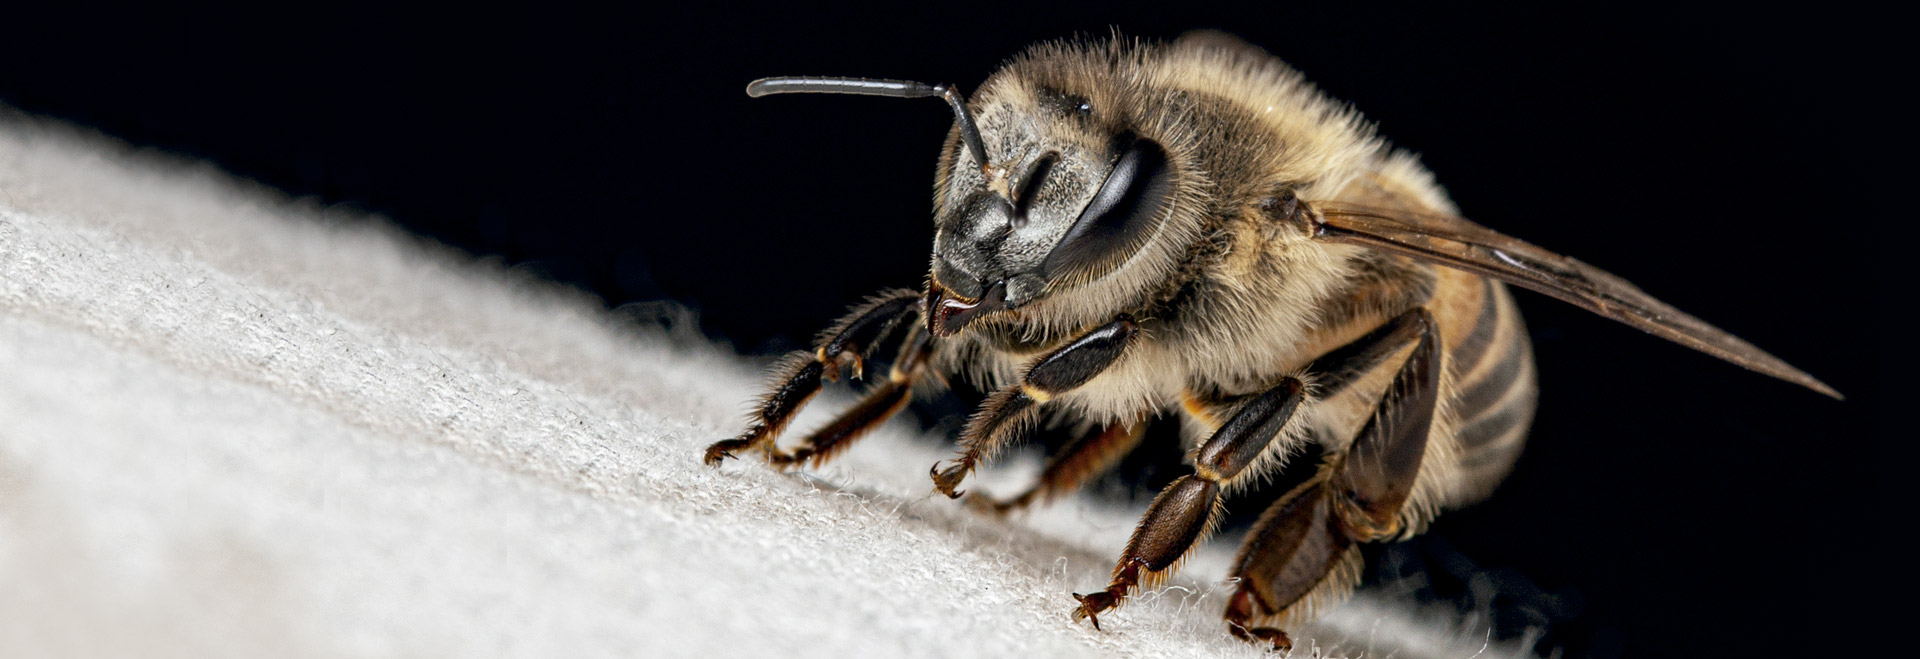 De acordo com a pesquisa, a abelha comum (Apis mellifera) visitou as flores das duas culturas cultivadas: polinização e serviços ecossistêmicos, como o controle de pragas